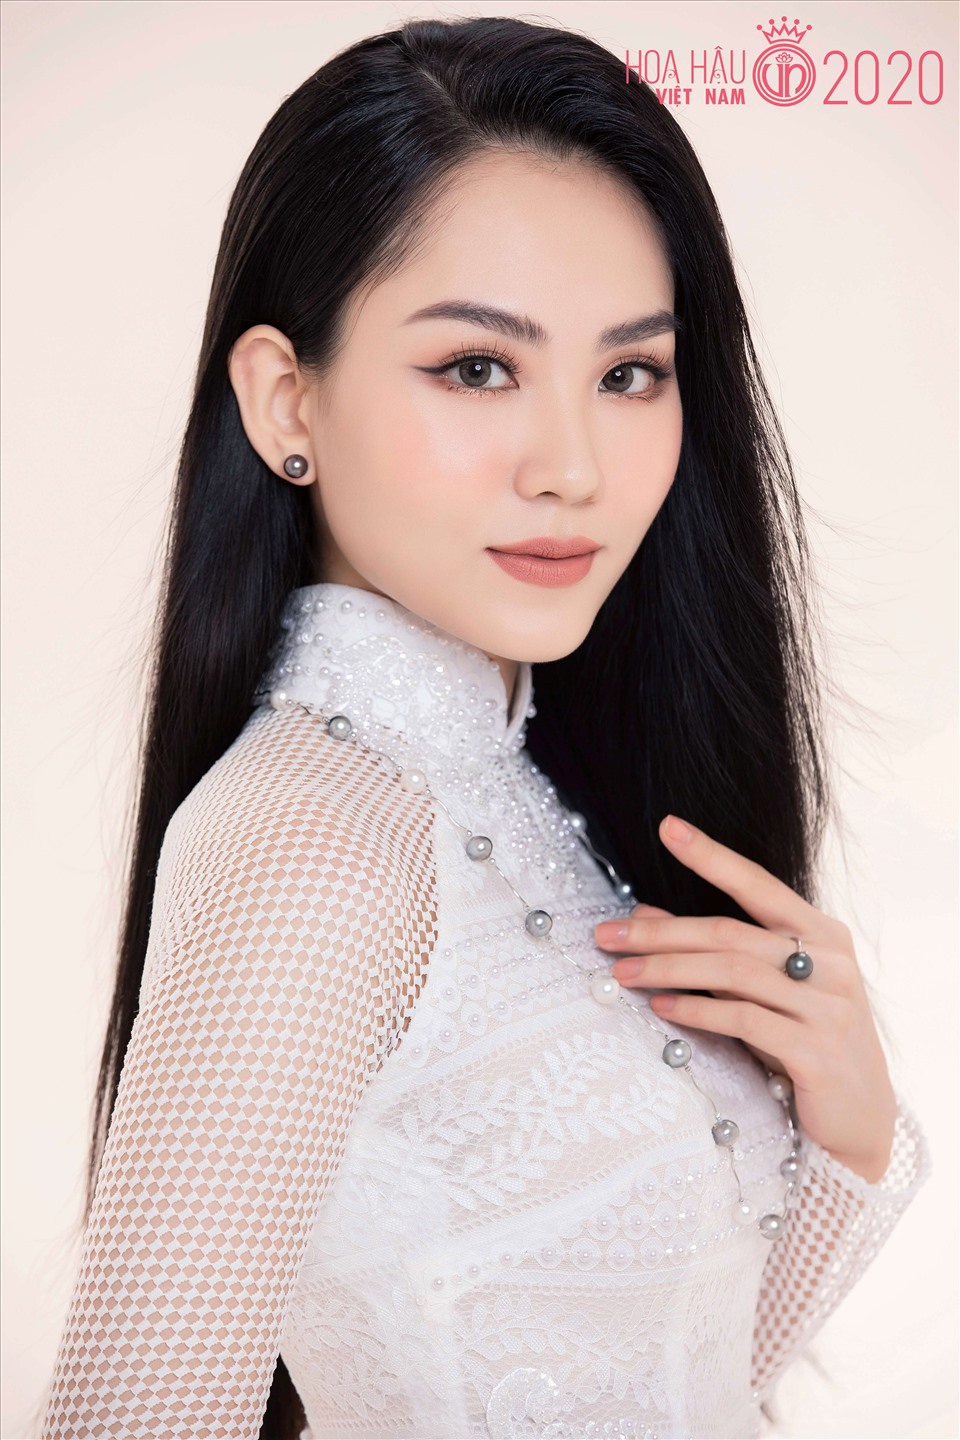 Cô từng lọt top 5 Hoa hậu Việt Nam 2020 và giành danh hiệu Người đẹp Nhân ái.